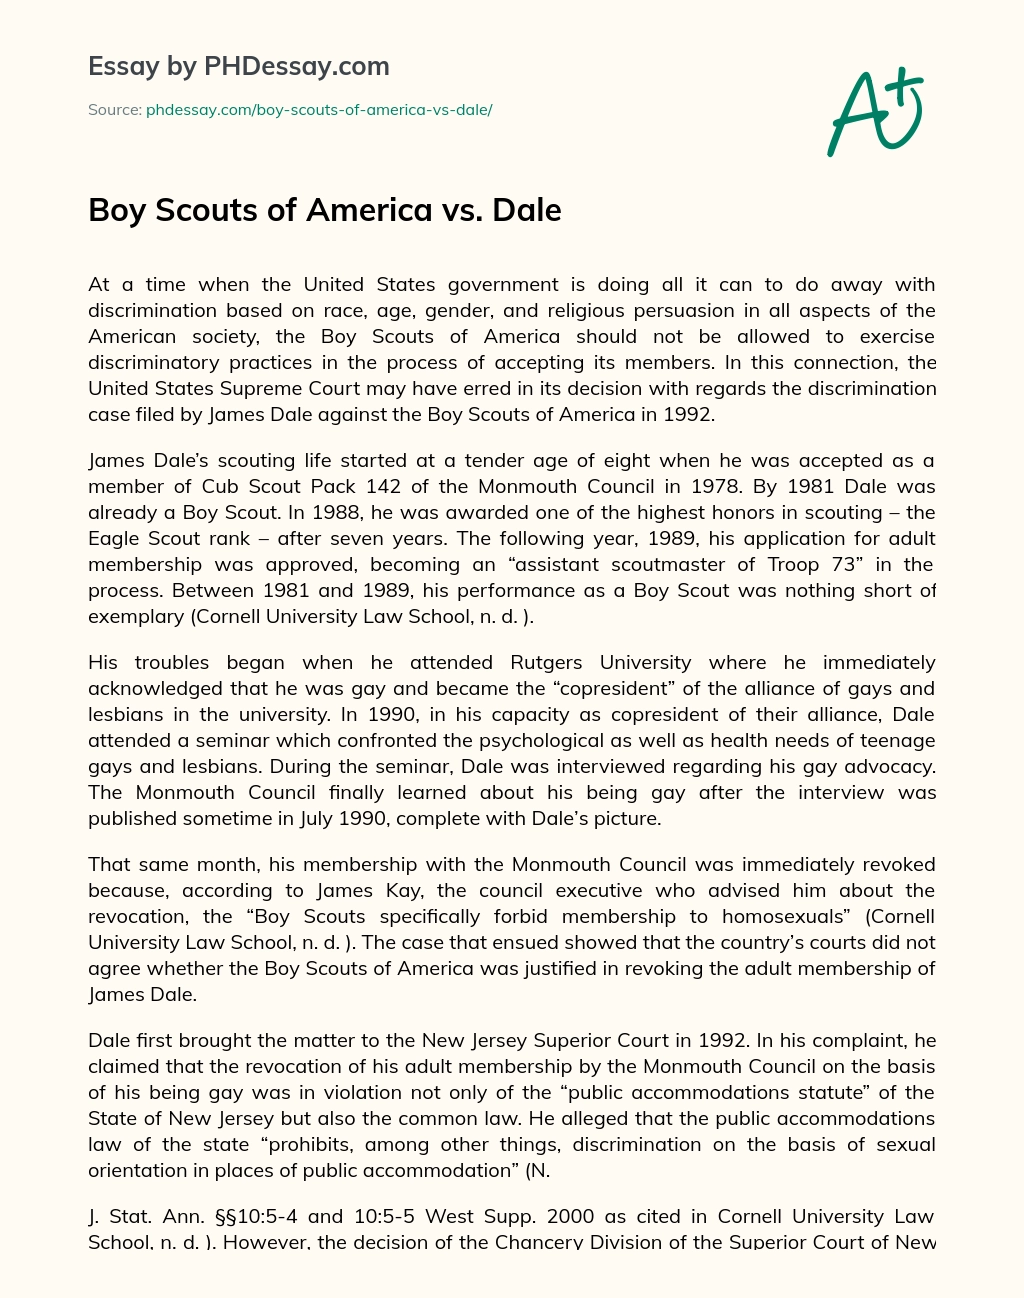 Boy Scouts of America vs. Dale essay